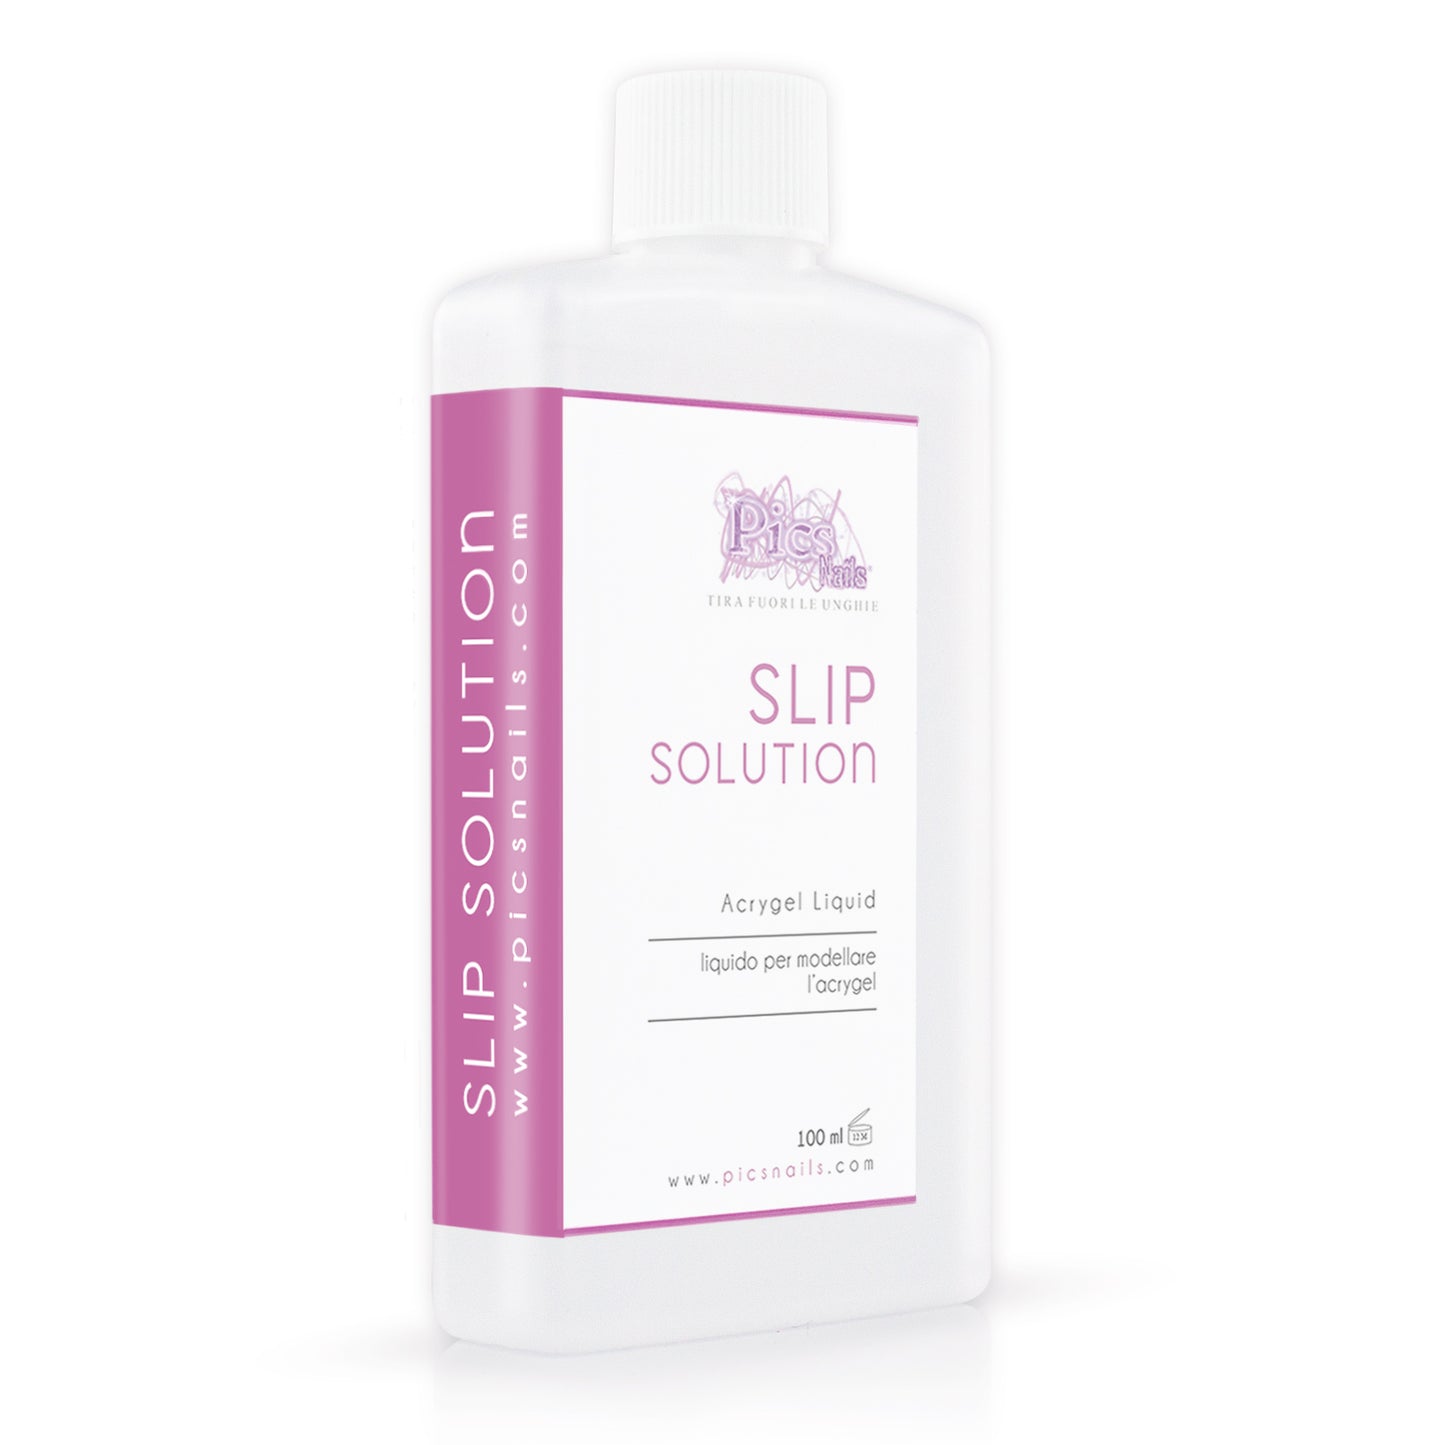 Slip Solution 100 ml Liquido Professionale per Unghie - Liquido Modellante per Acrygel Alta Qualità, Ammorbidisce E Facilita La Lavorazione Del Gel Ibrido per Unghie